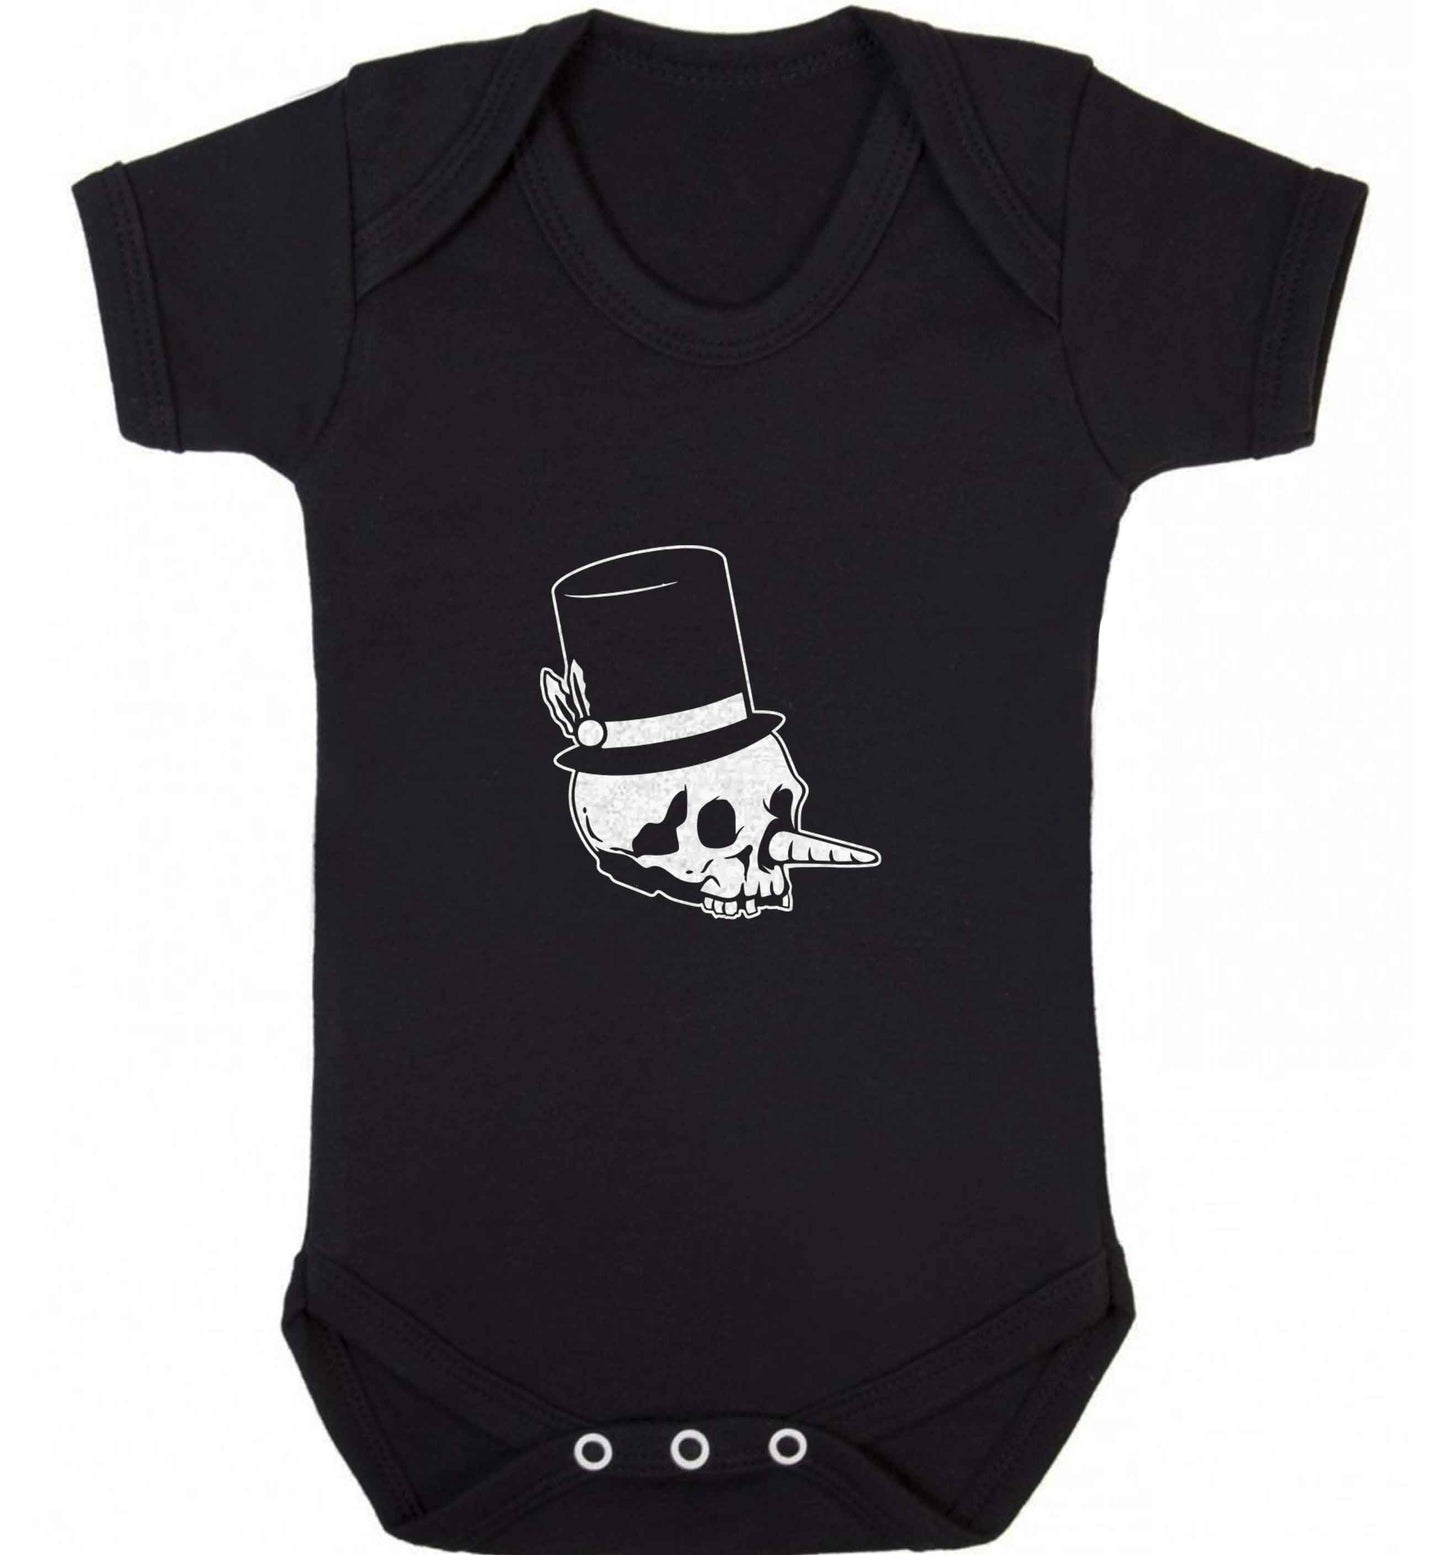 Snowman punk baby vest black 18-24 months